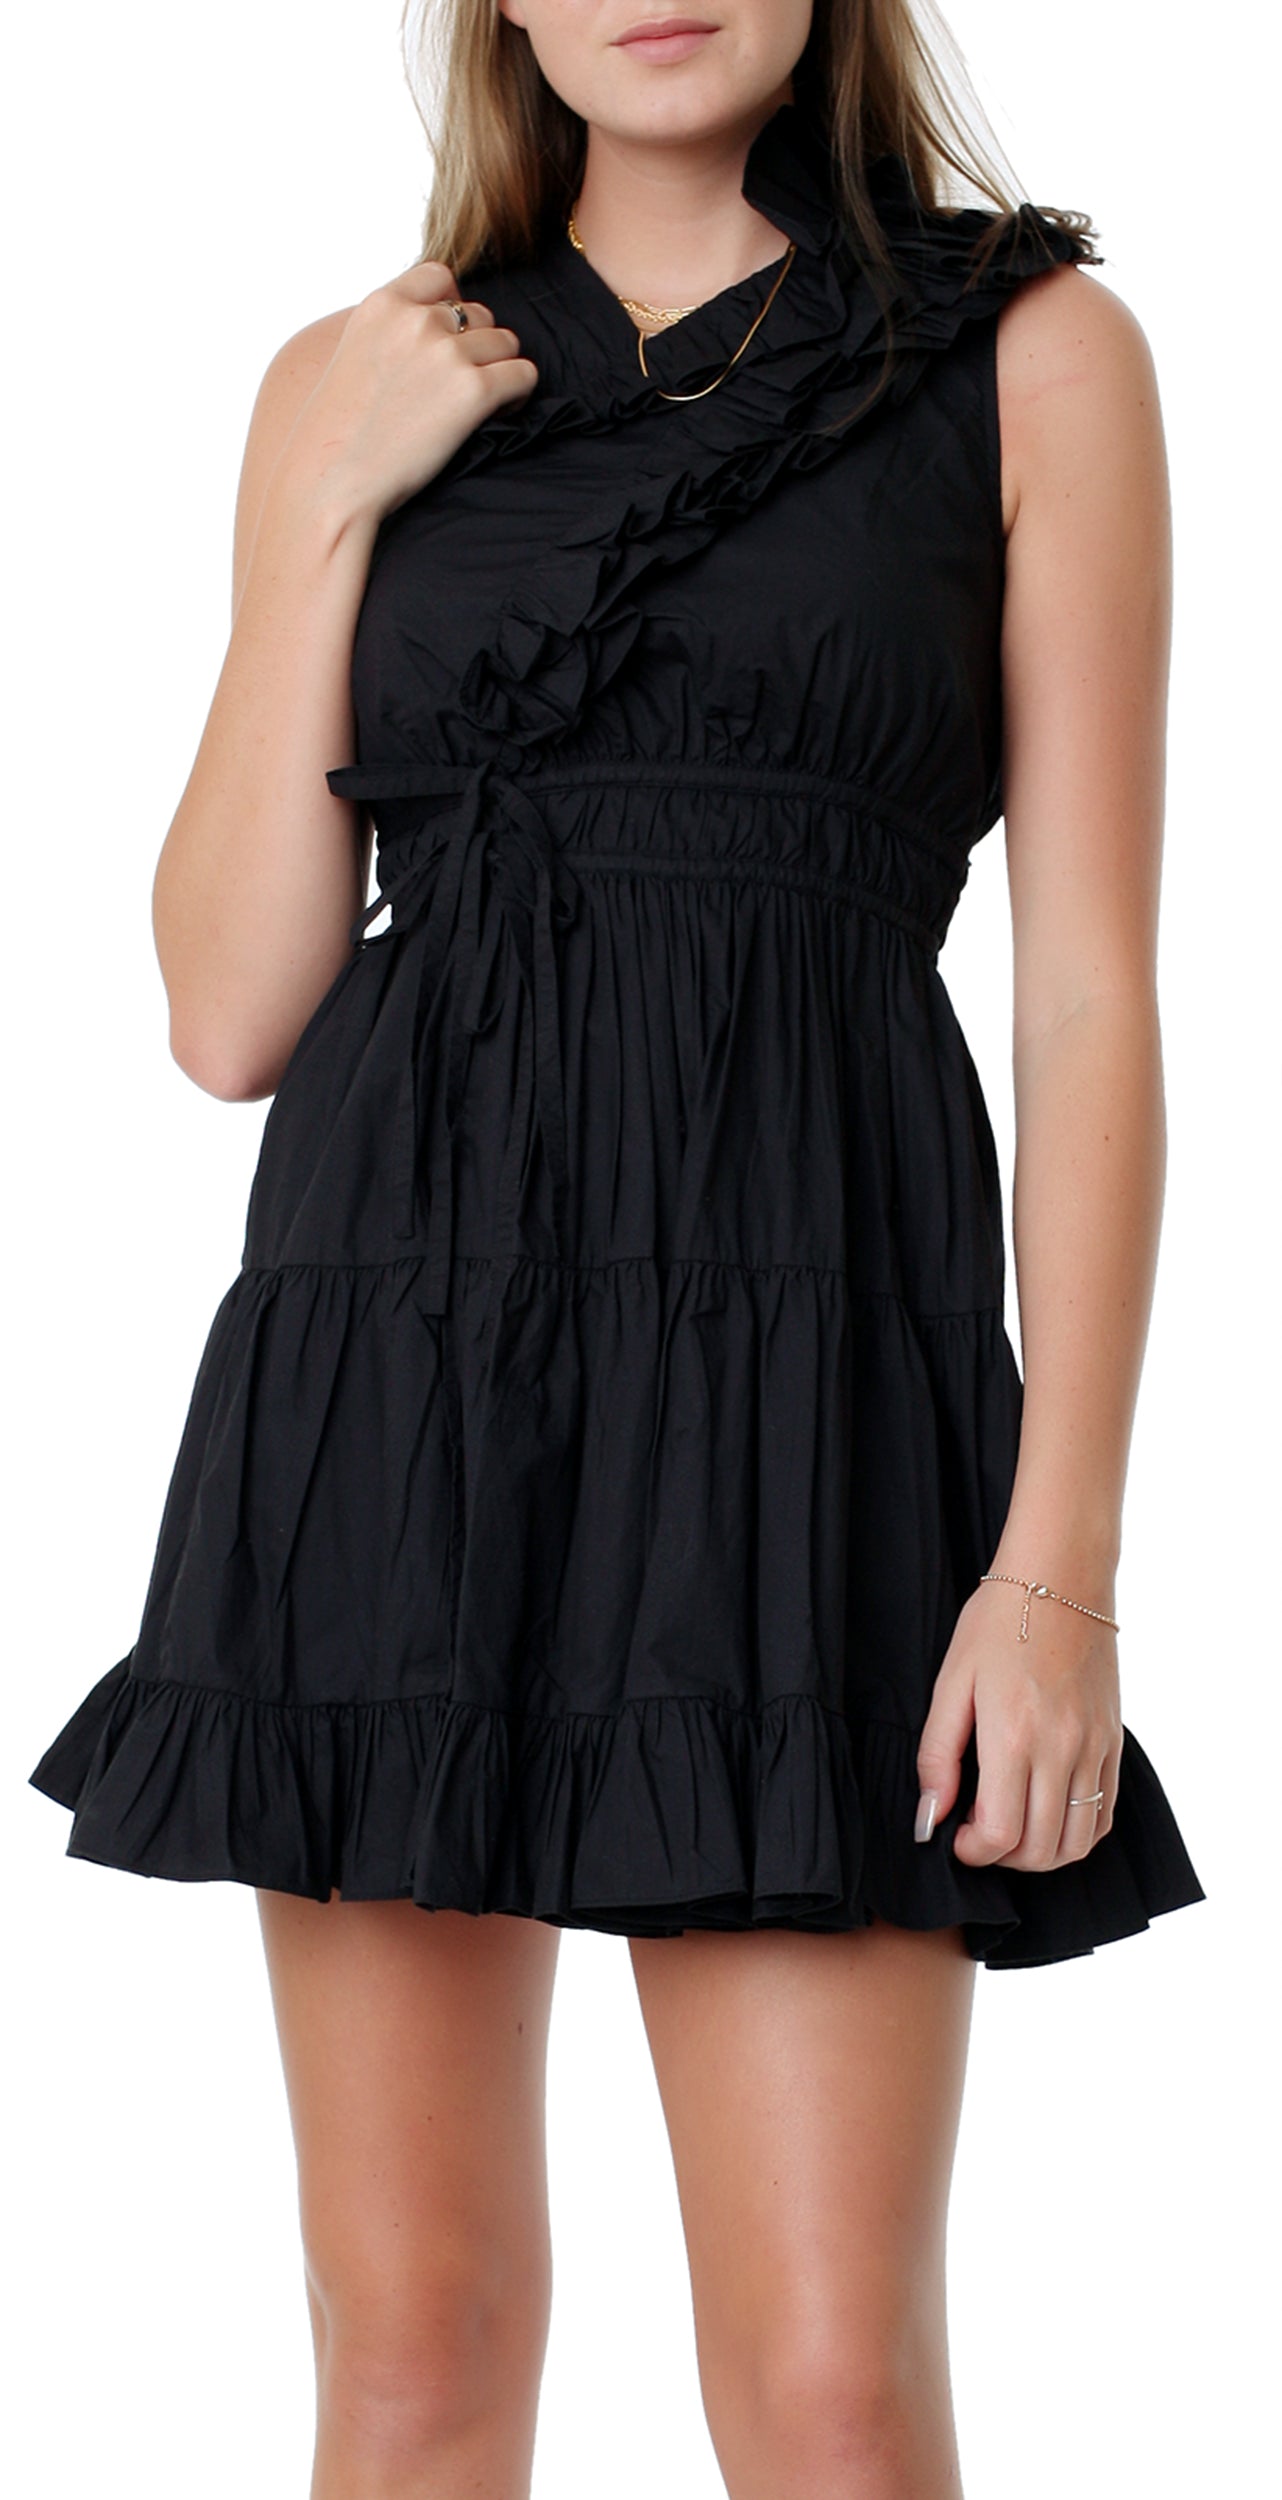 IIiana Dress Black